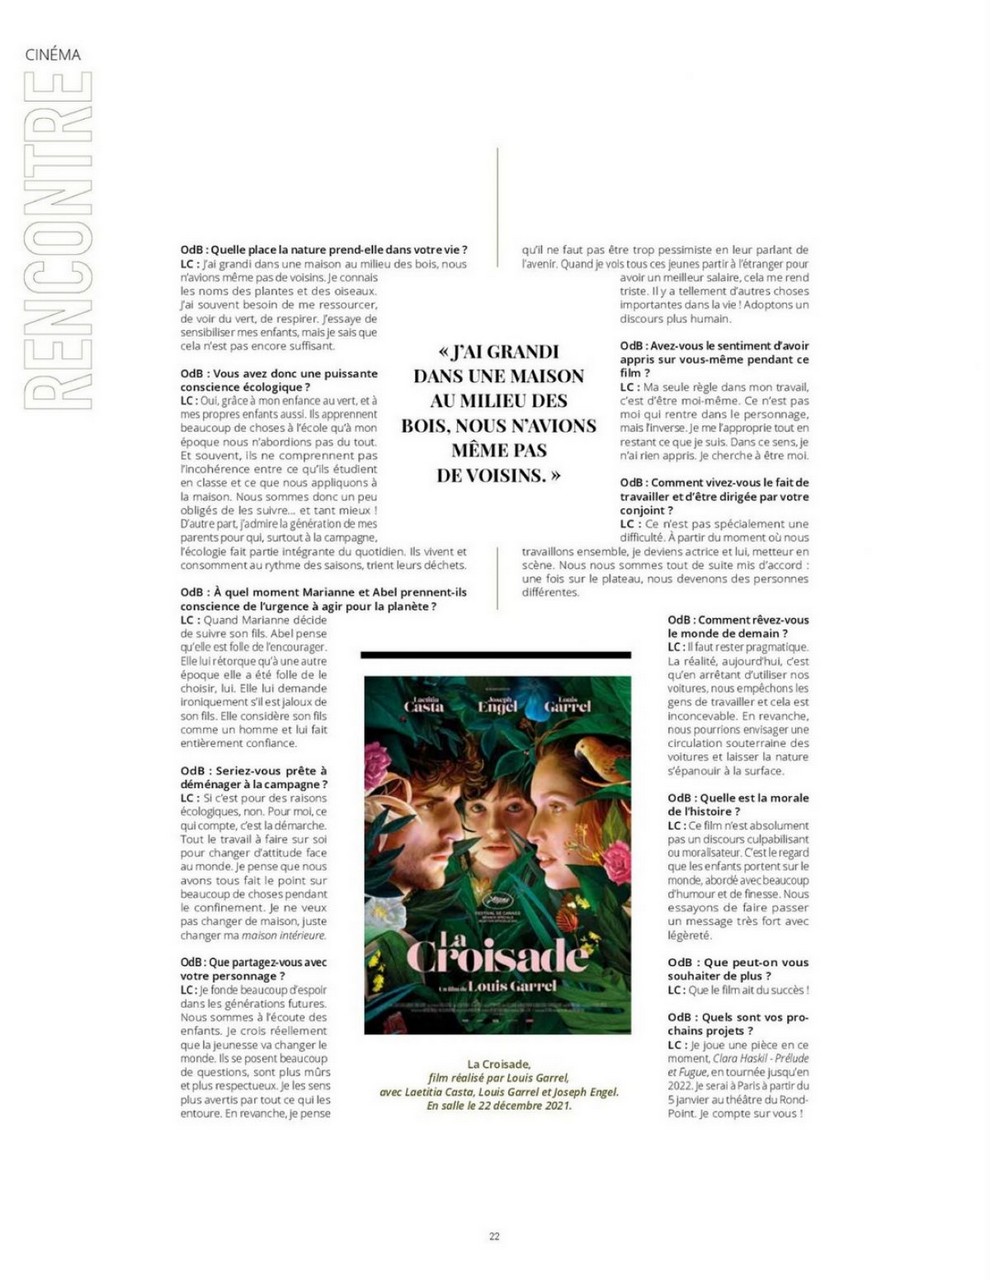 Laetitia Casta Infrarouge Magazine November